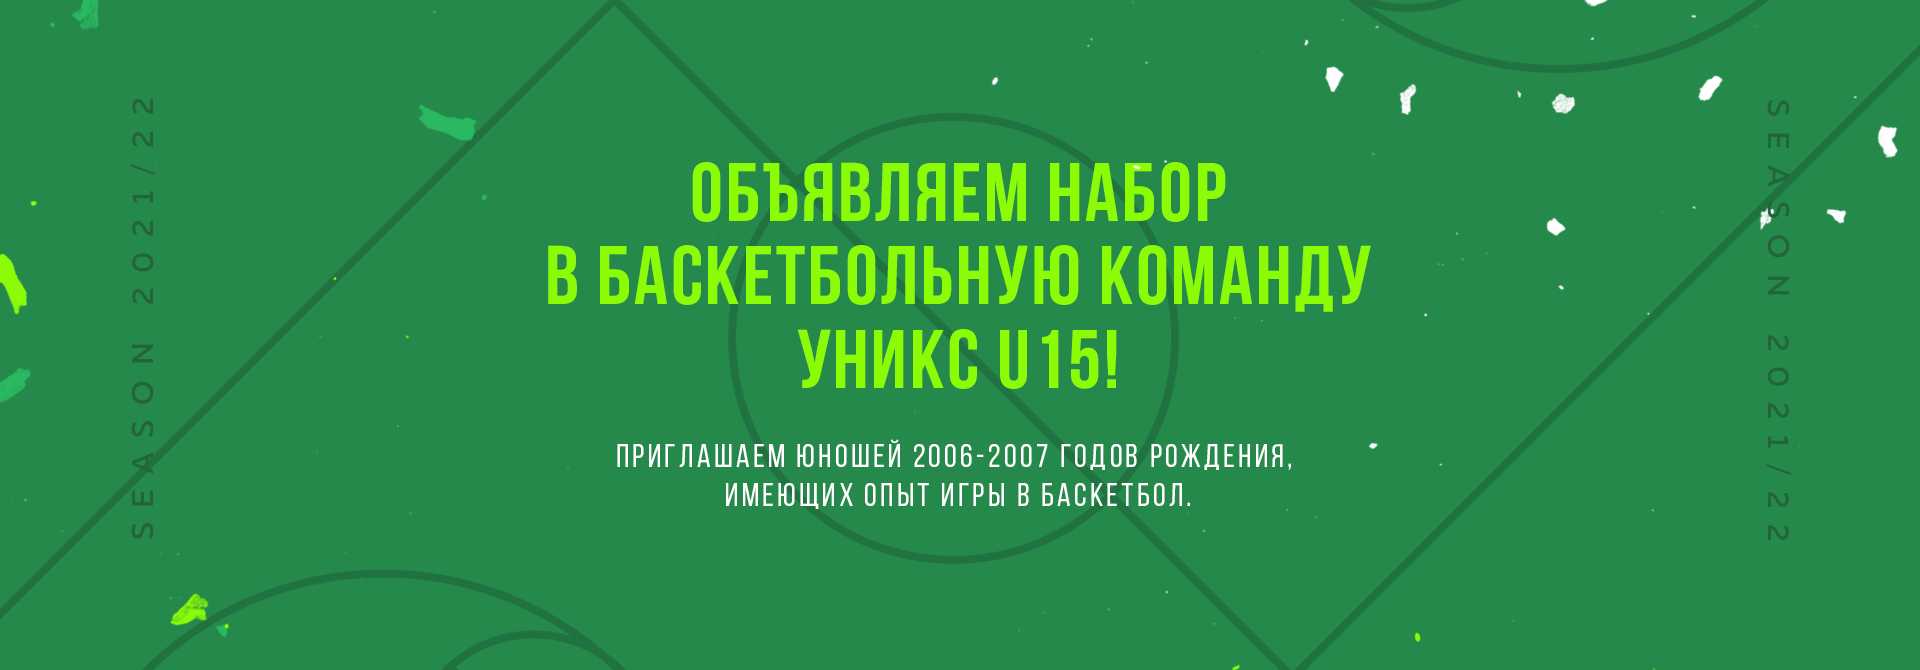 Объявляем набор в баскетбольную команду УНИКС U15!